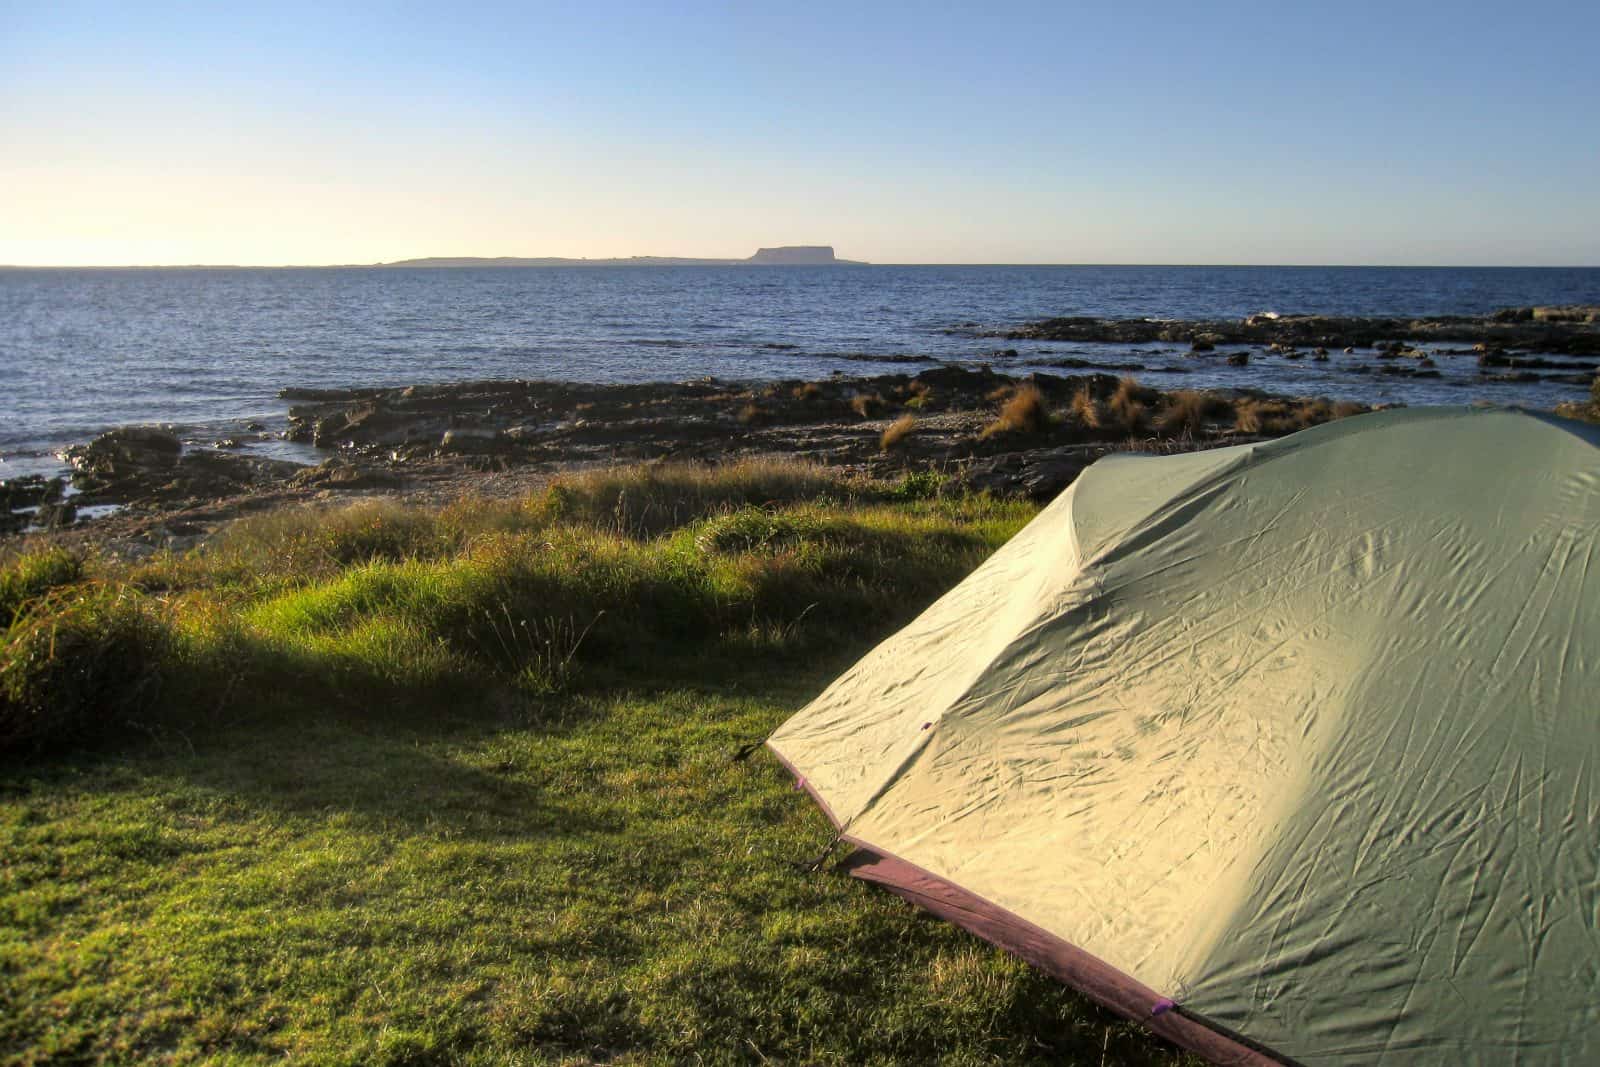 Camping in Tasmania